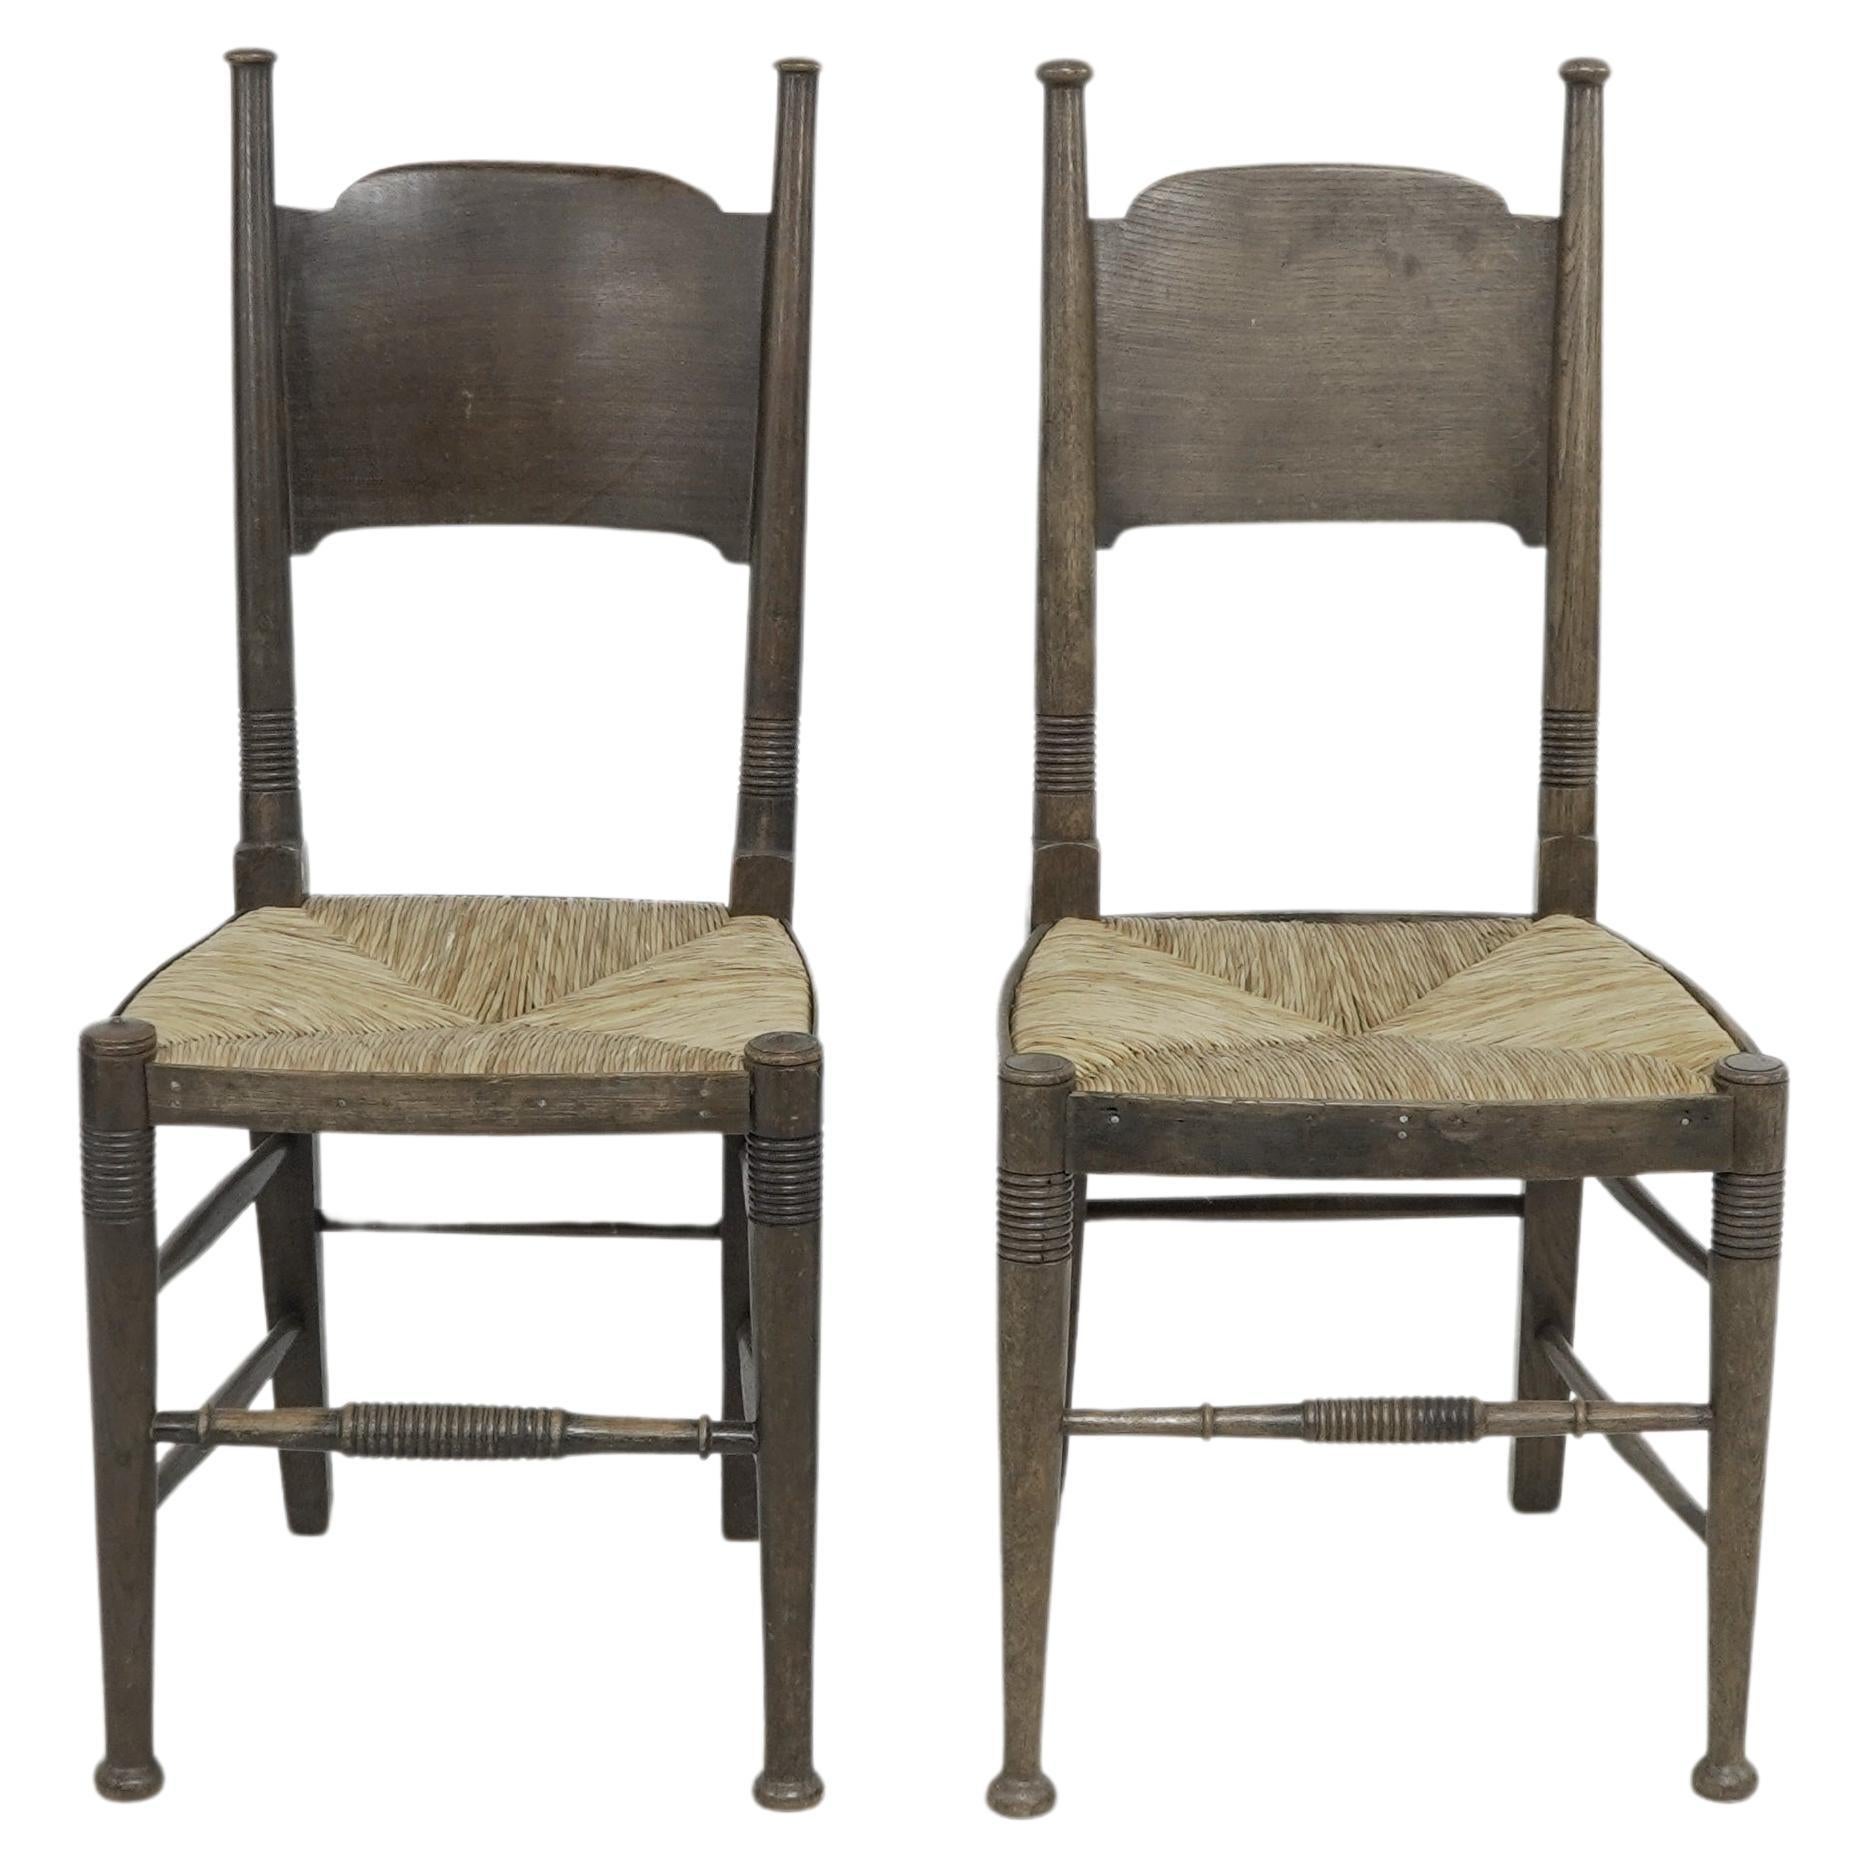 William Birch, de High Wycombe. Détaillant Liberty & Co. 
Paire de chaises de salle à manger ou d'appoint en chêne à assise en jonc Arts & Crafts, avec un large appui-tête incurvé, des pieds tournés en anneau et des brancards avant, conservant les